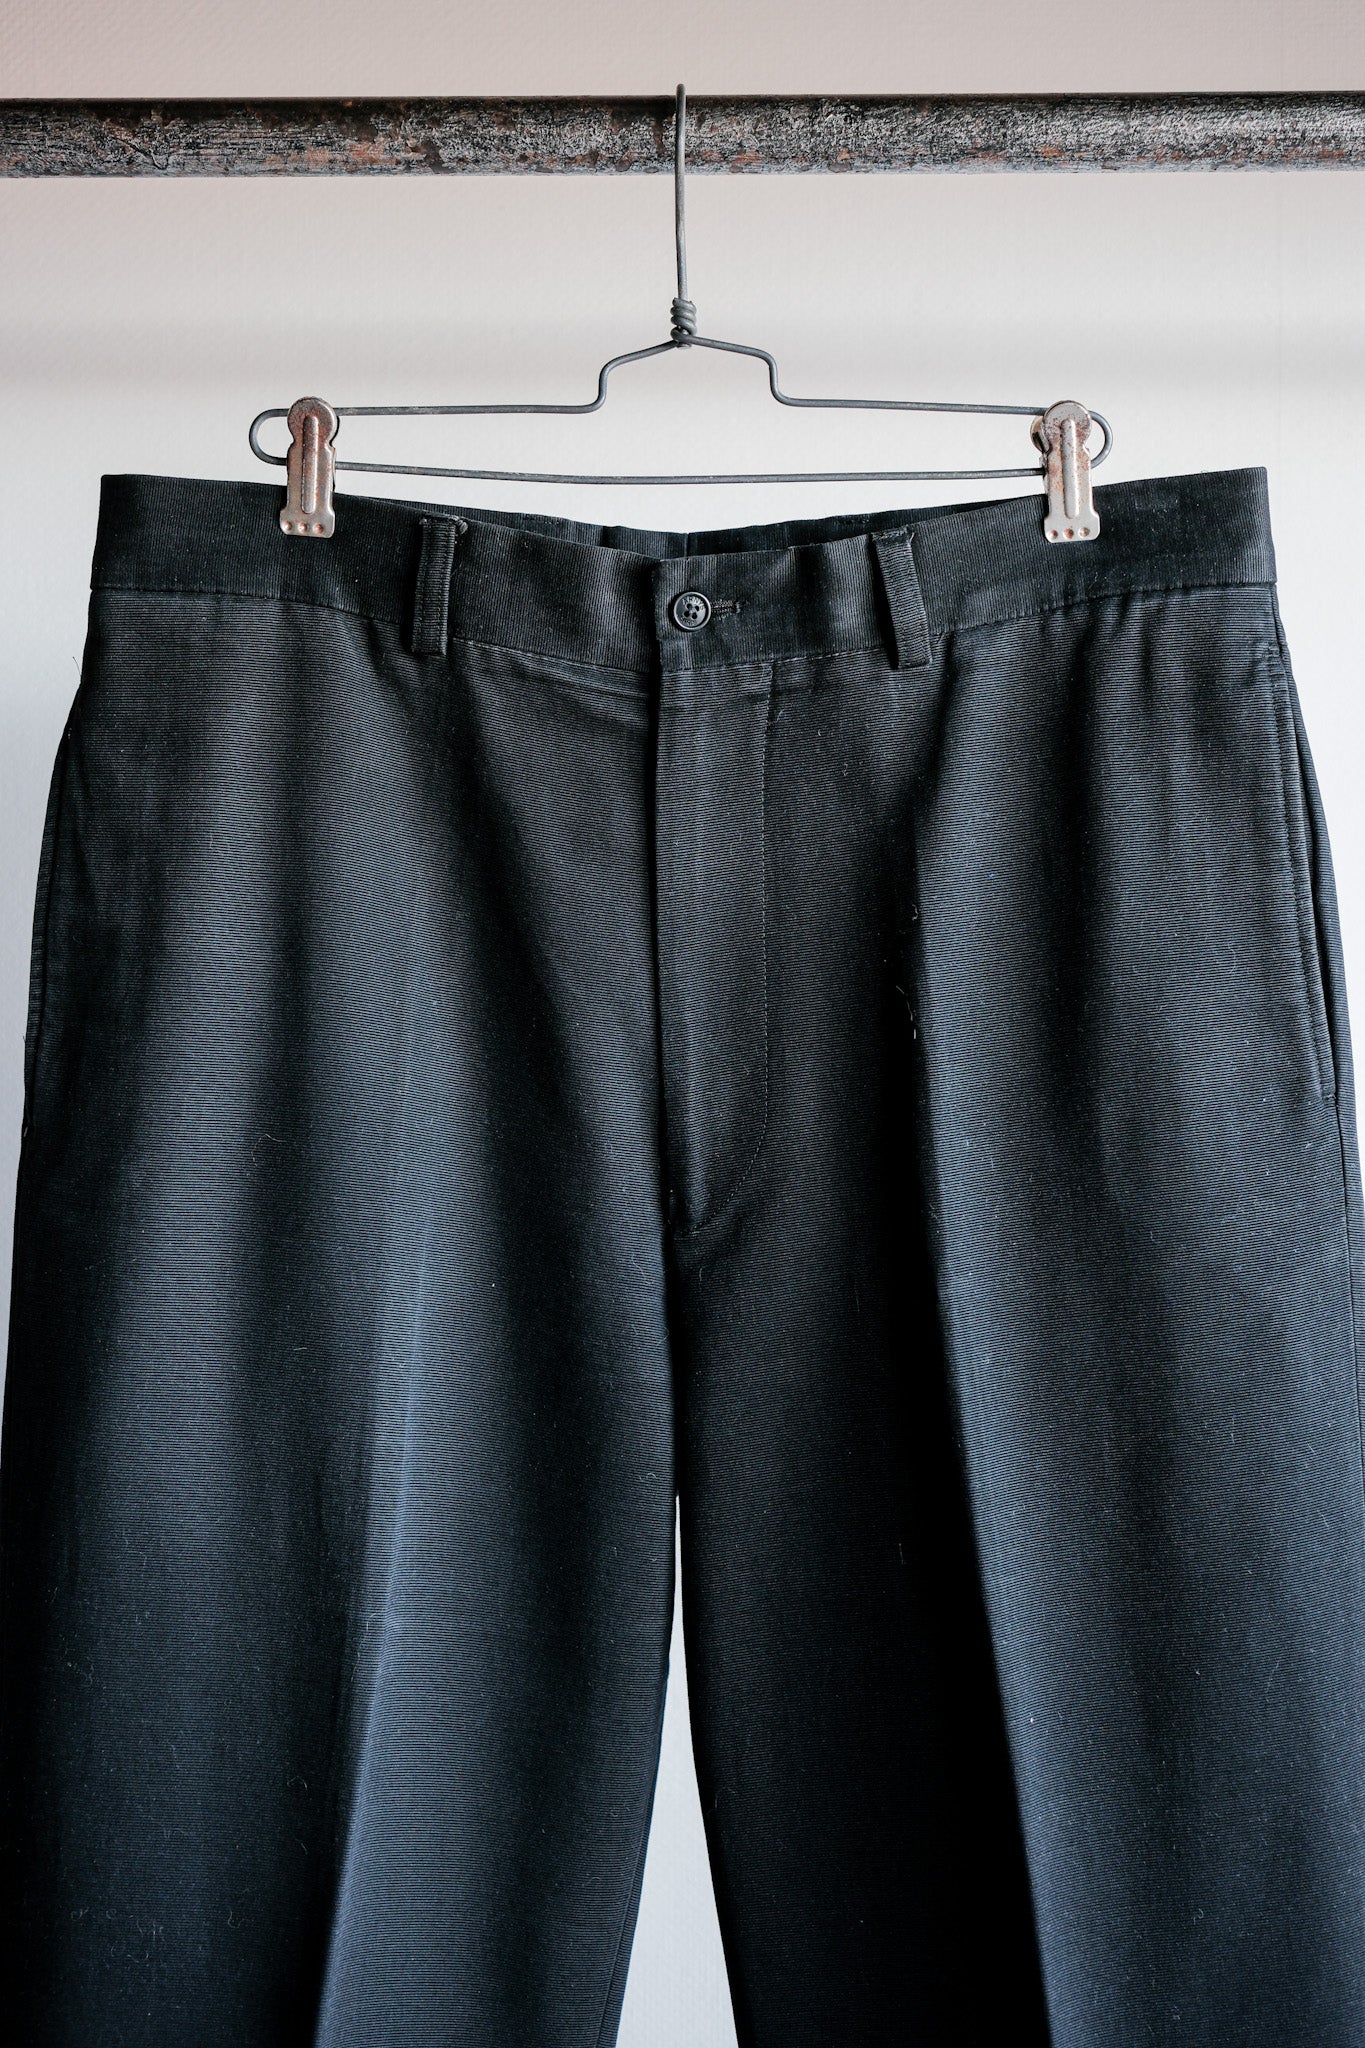 [〜00's]舊阿尼斯巴黎的棉質褲子大小。42